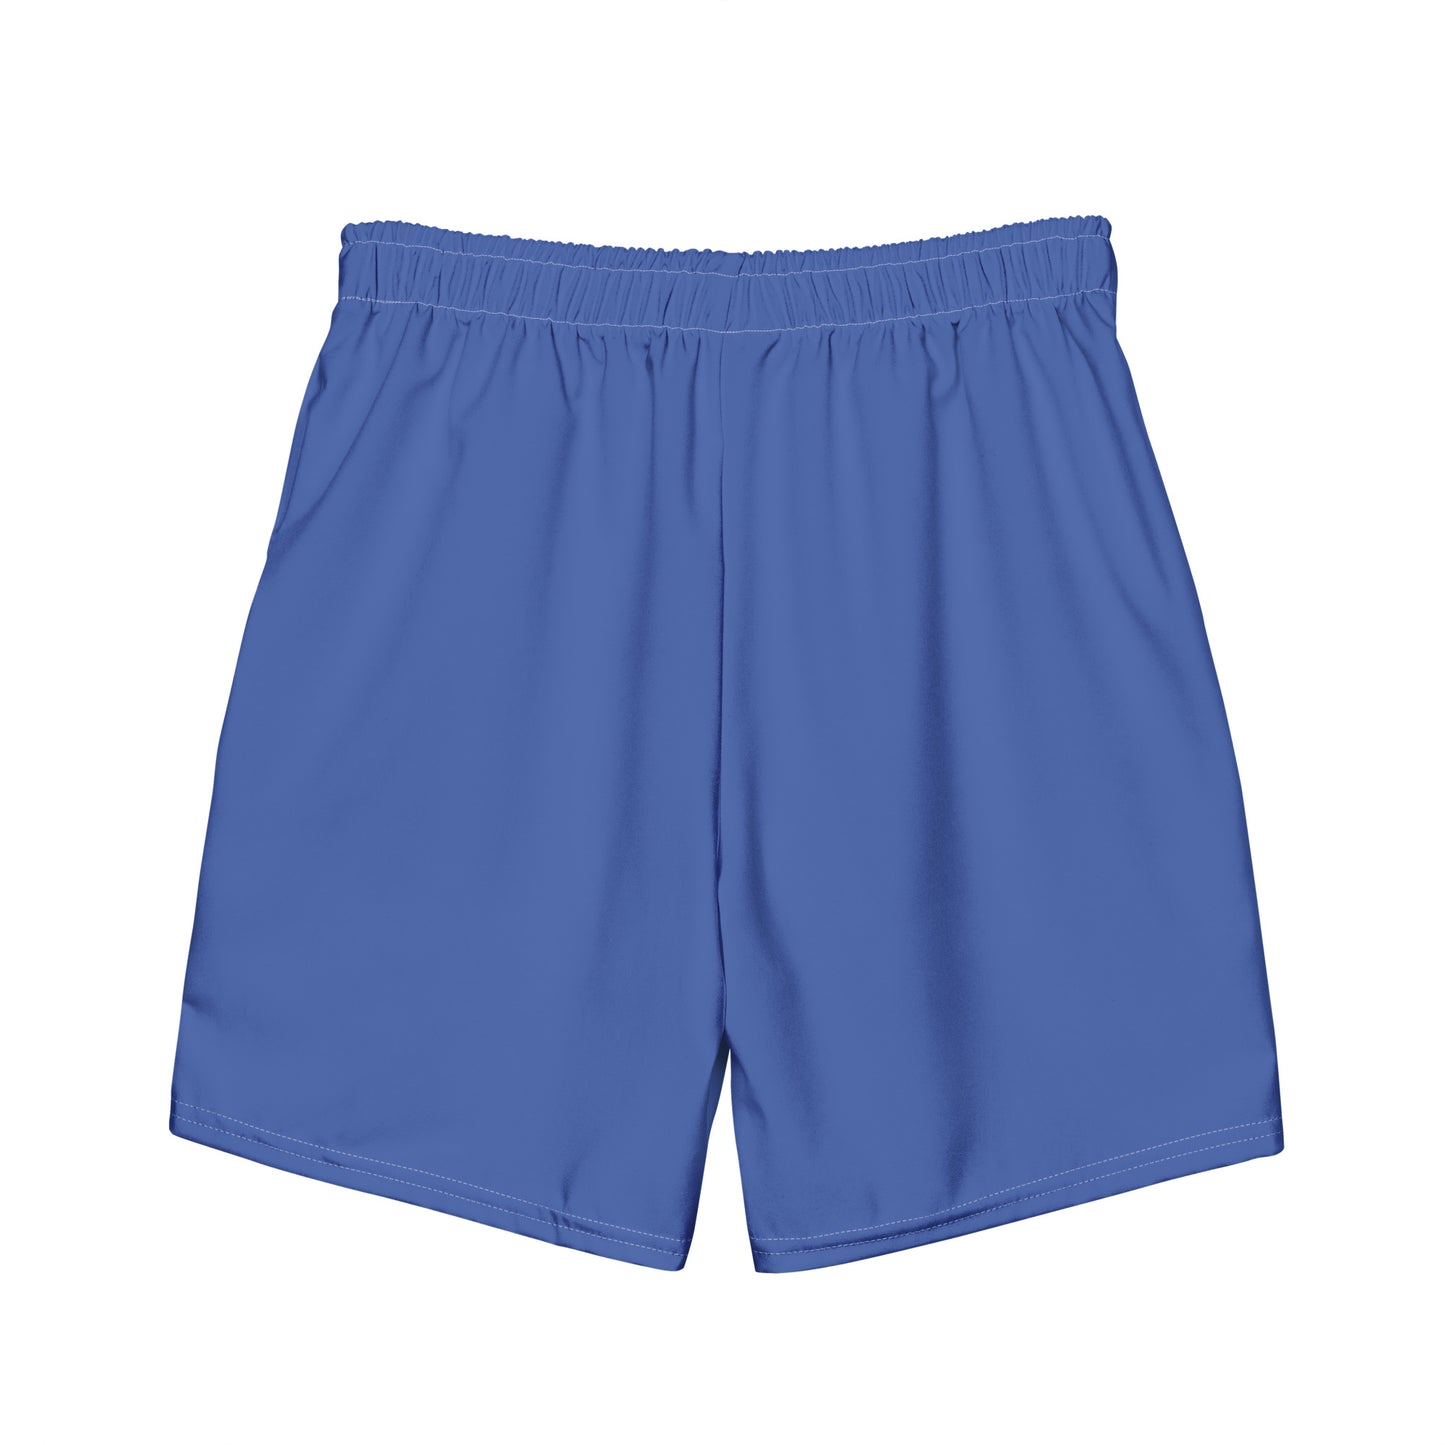 Cobalt Blue - Sustainably Made Men's swim trunks